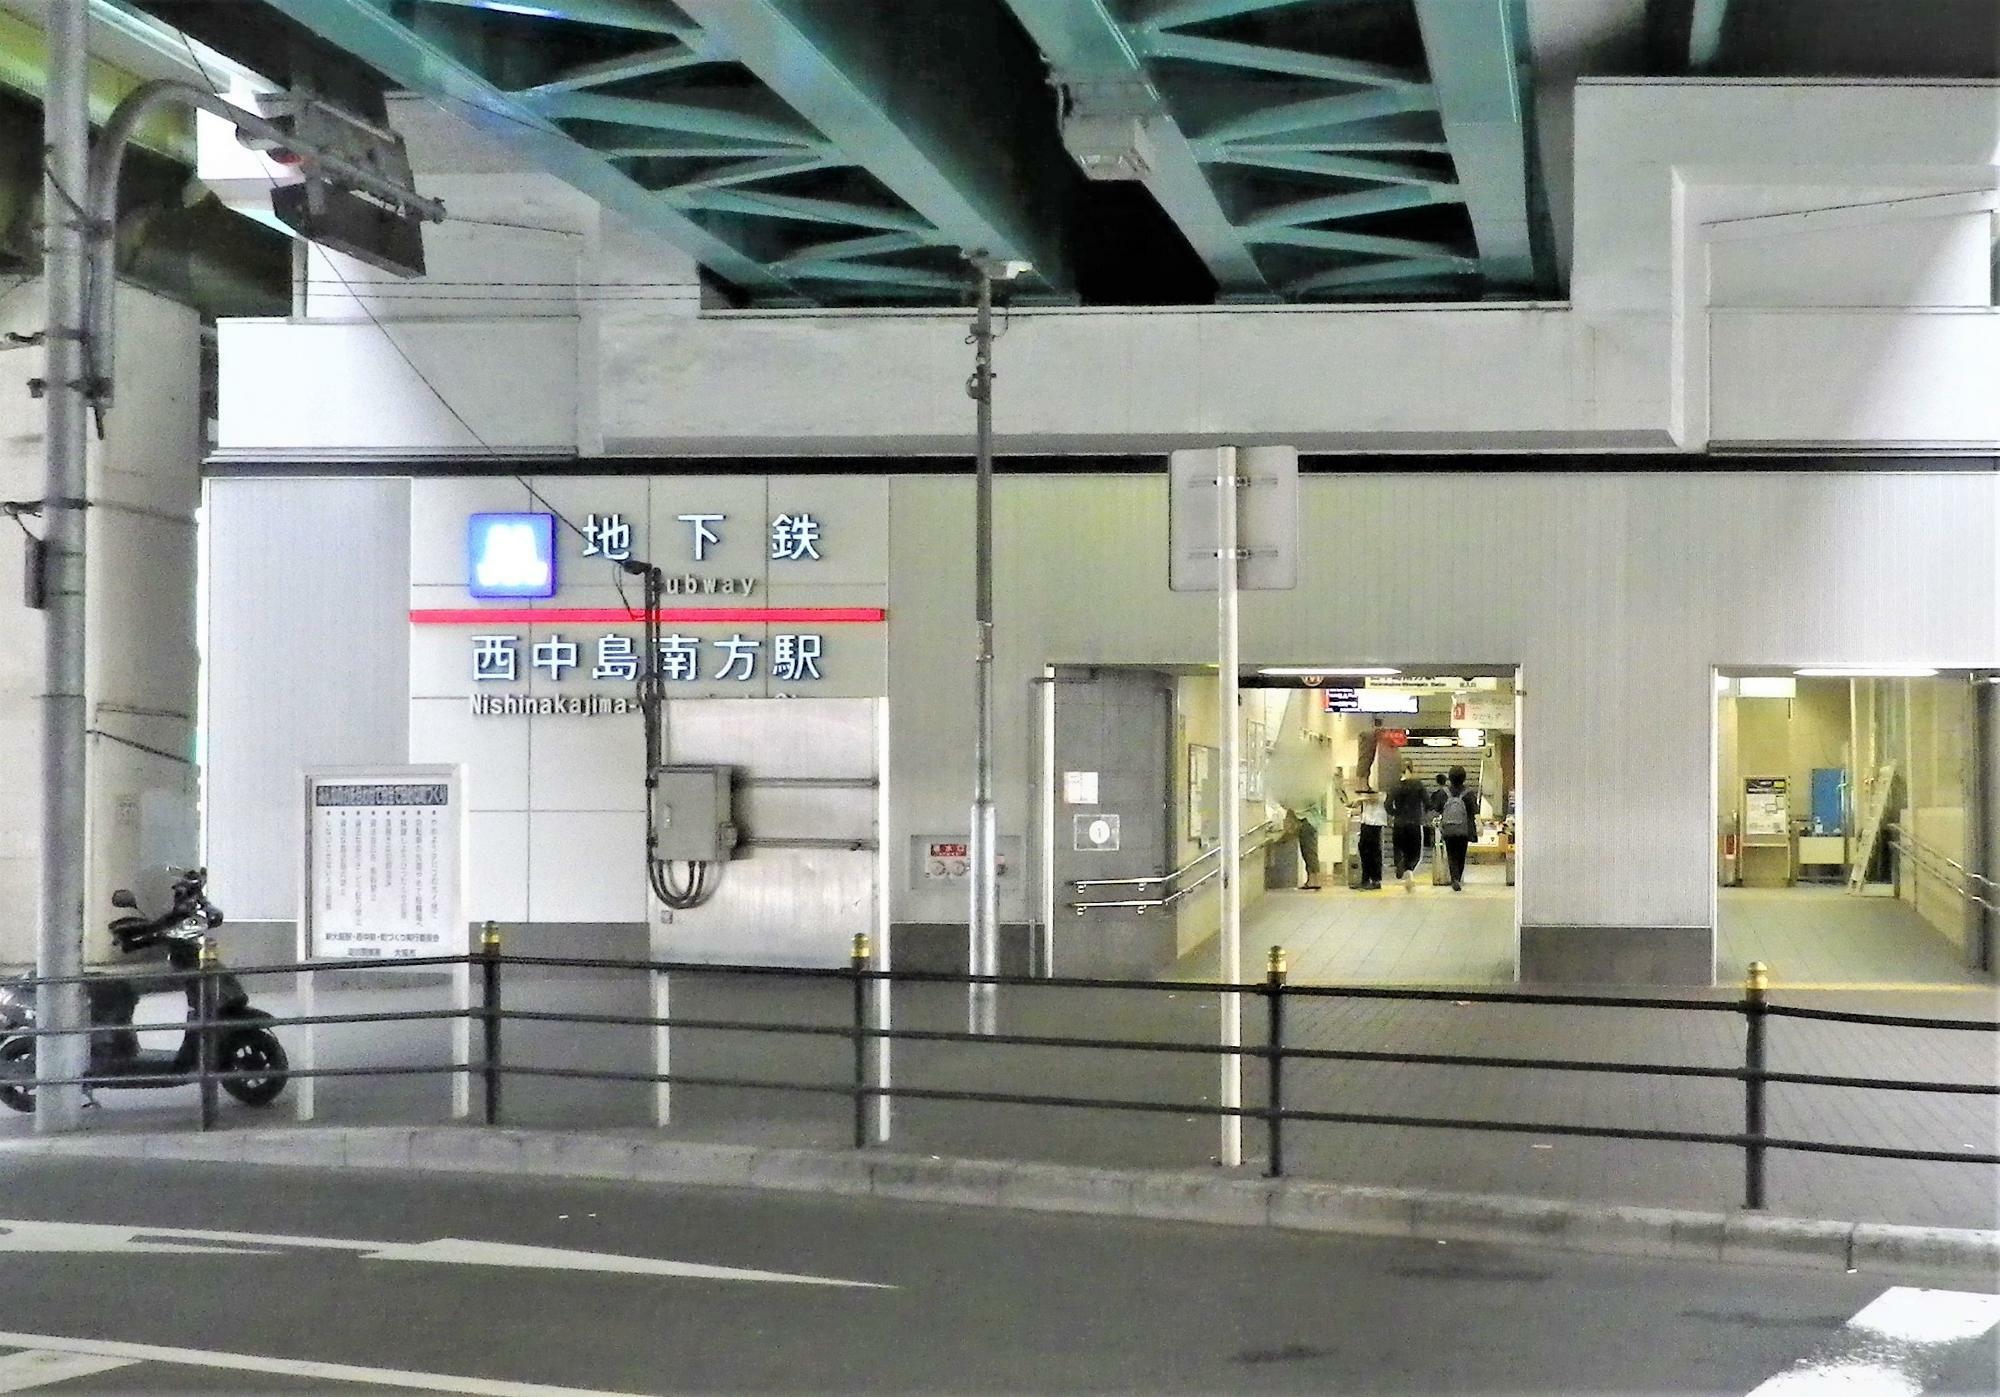 大阪メトロ御堂筋線西中島南方駅北口。